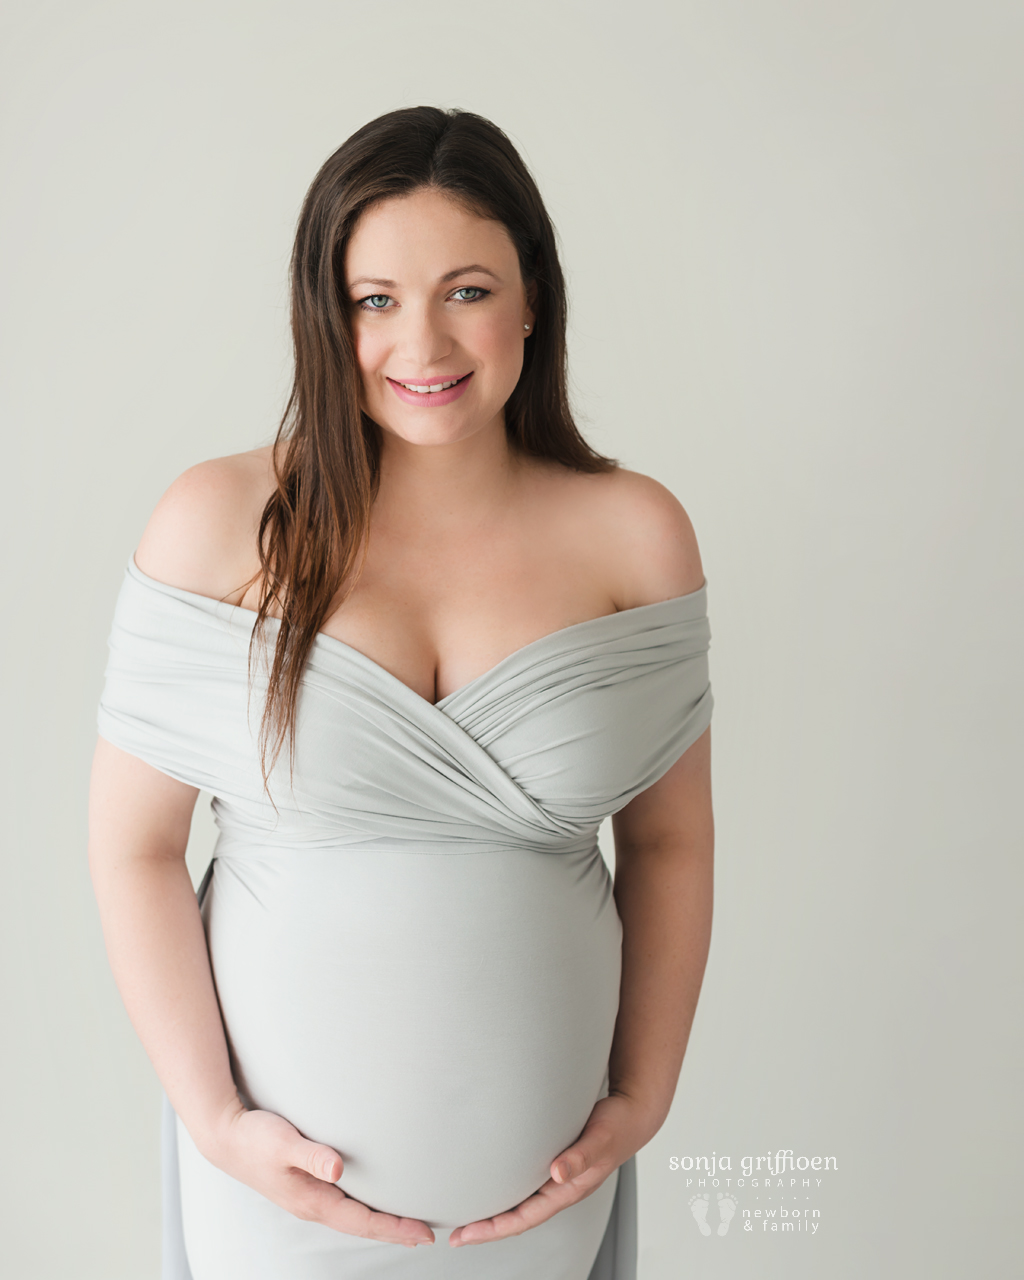 Sarah-Maternity-Brisbane-Newborn-Photographer-Sonja-Griffioen-03.jpg